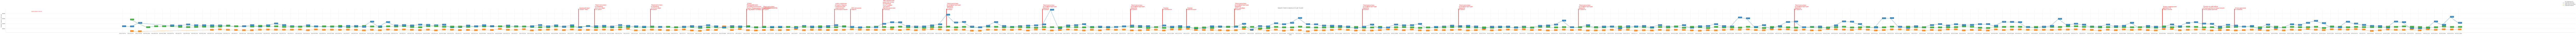 Гистограмма, показывающая среднюю стоимость квадратного метра недвижимости в Крыму по дням c 2022-01-01 по 2023-06-01